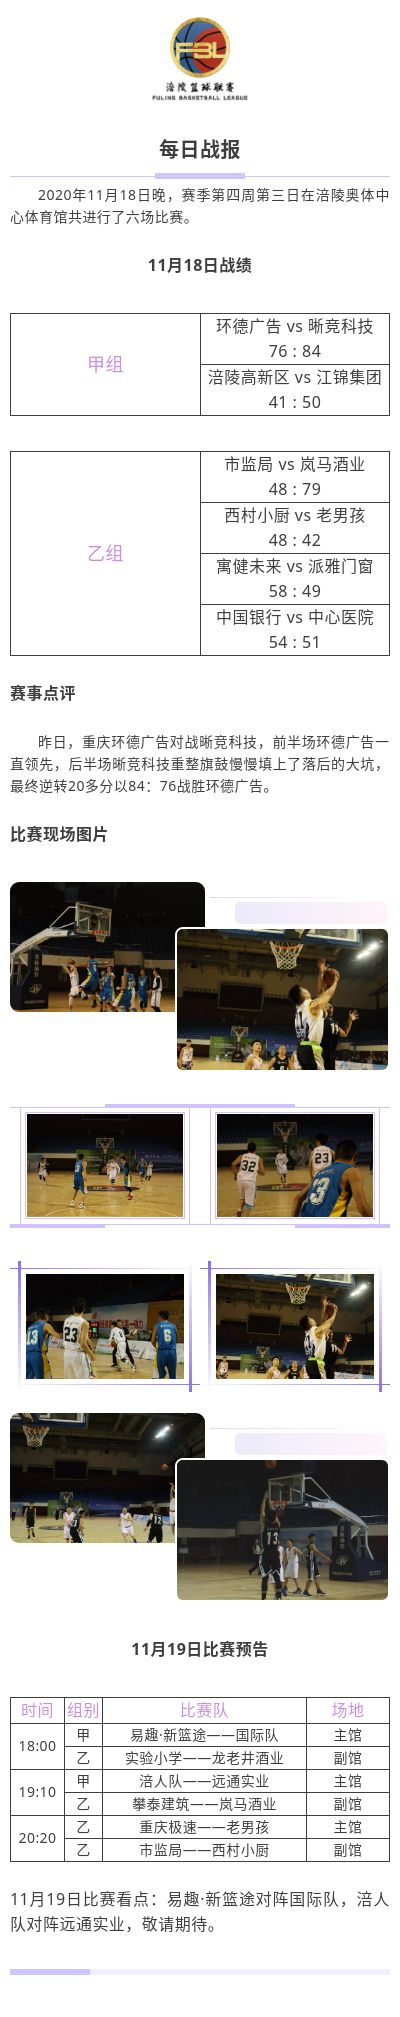 涪陵高新区·涪陵篮球联赛（FBL）2020赛季每日战报11.18